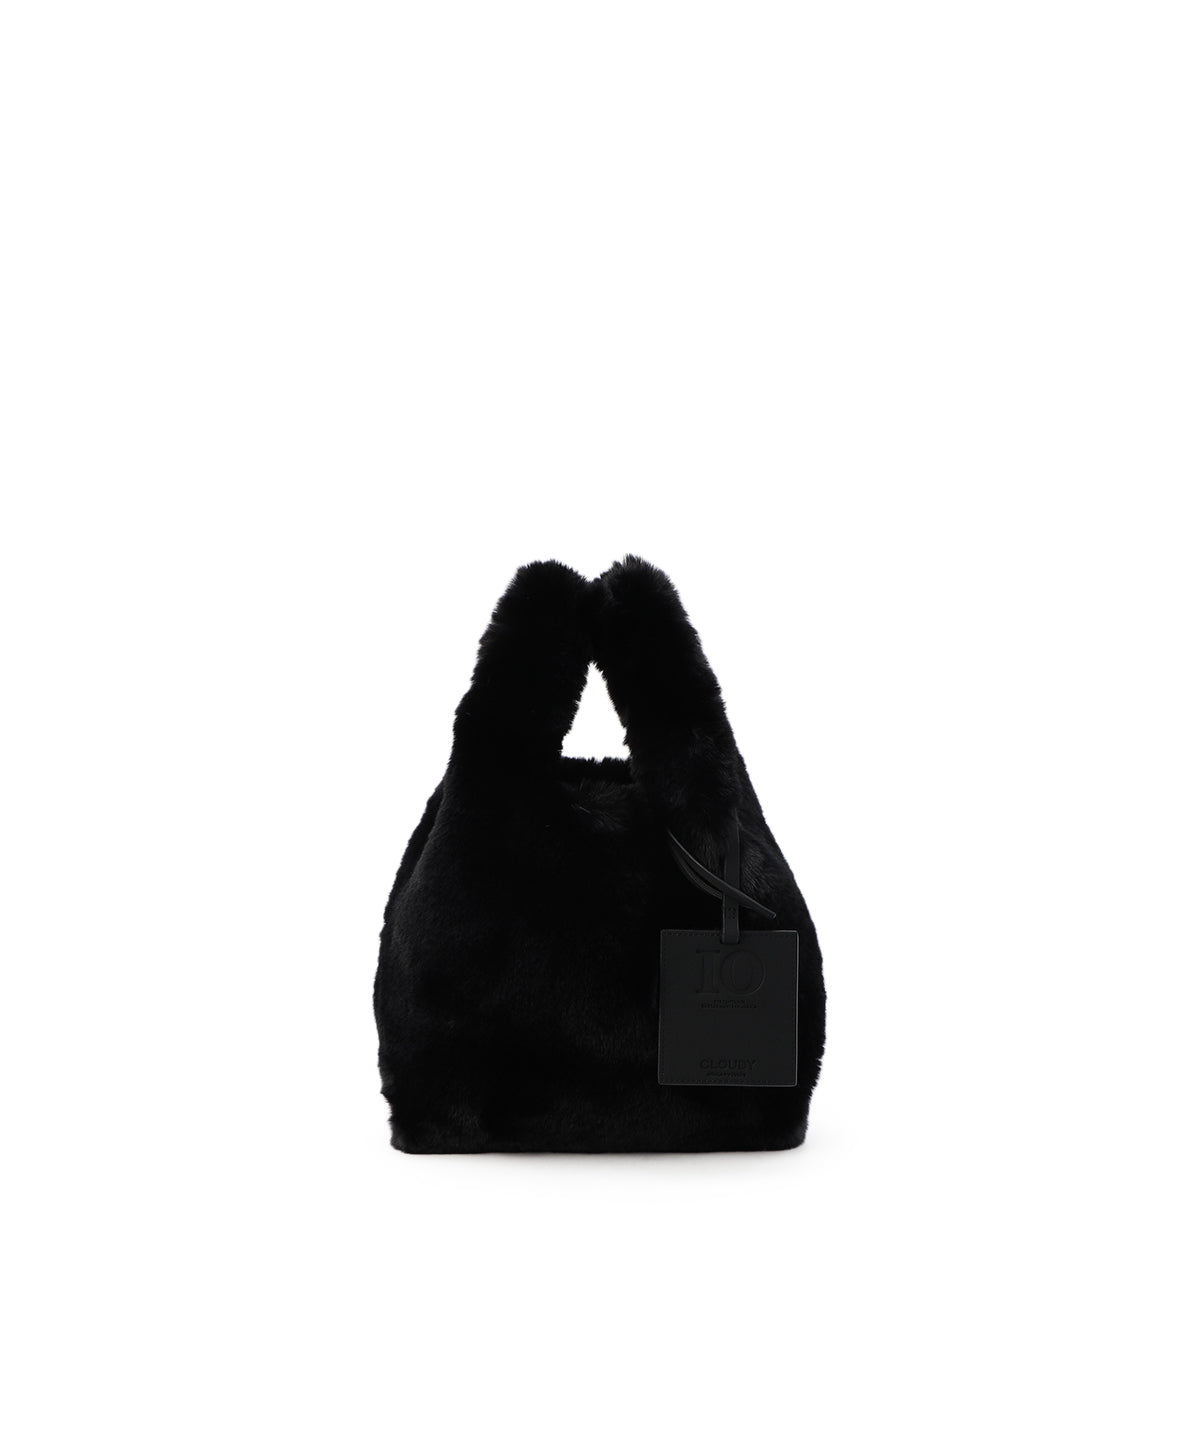 売場CLOUDY Eco Fur Tote Bag (Small) L .GRAY バッグ